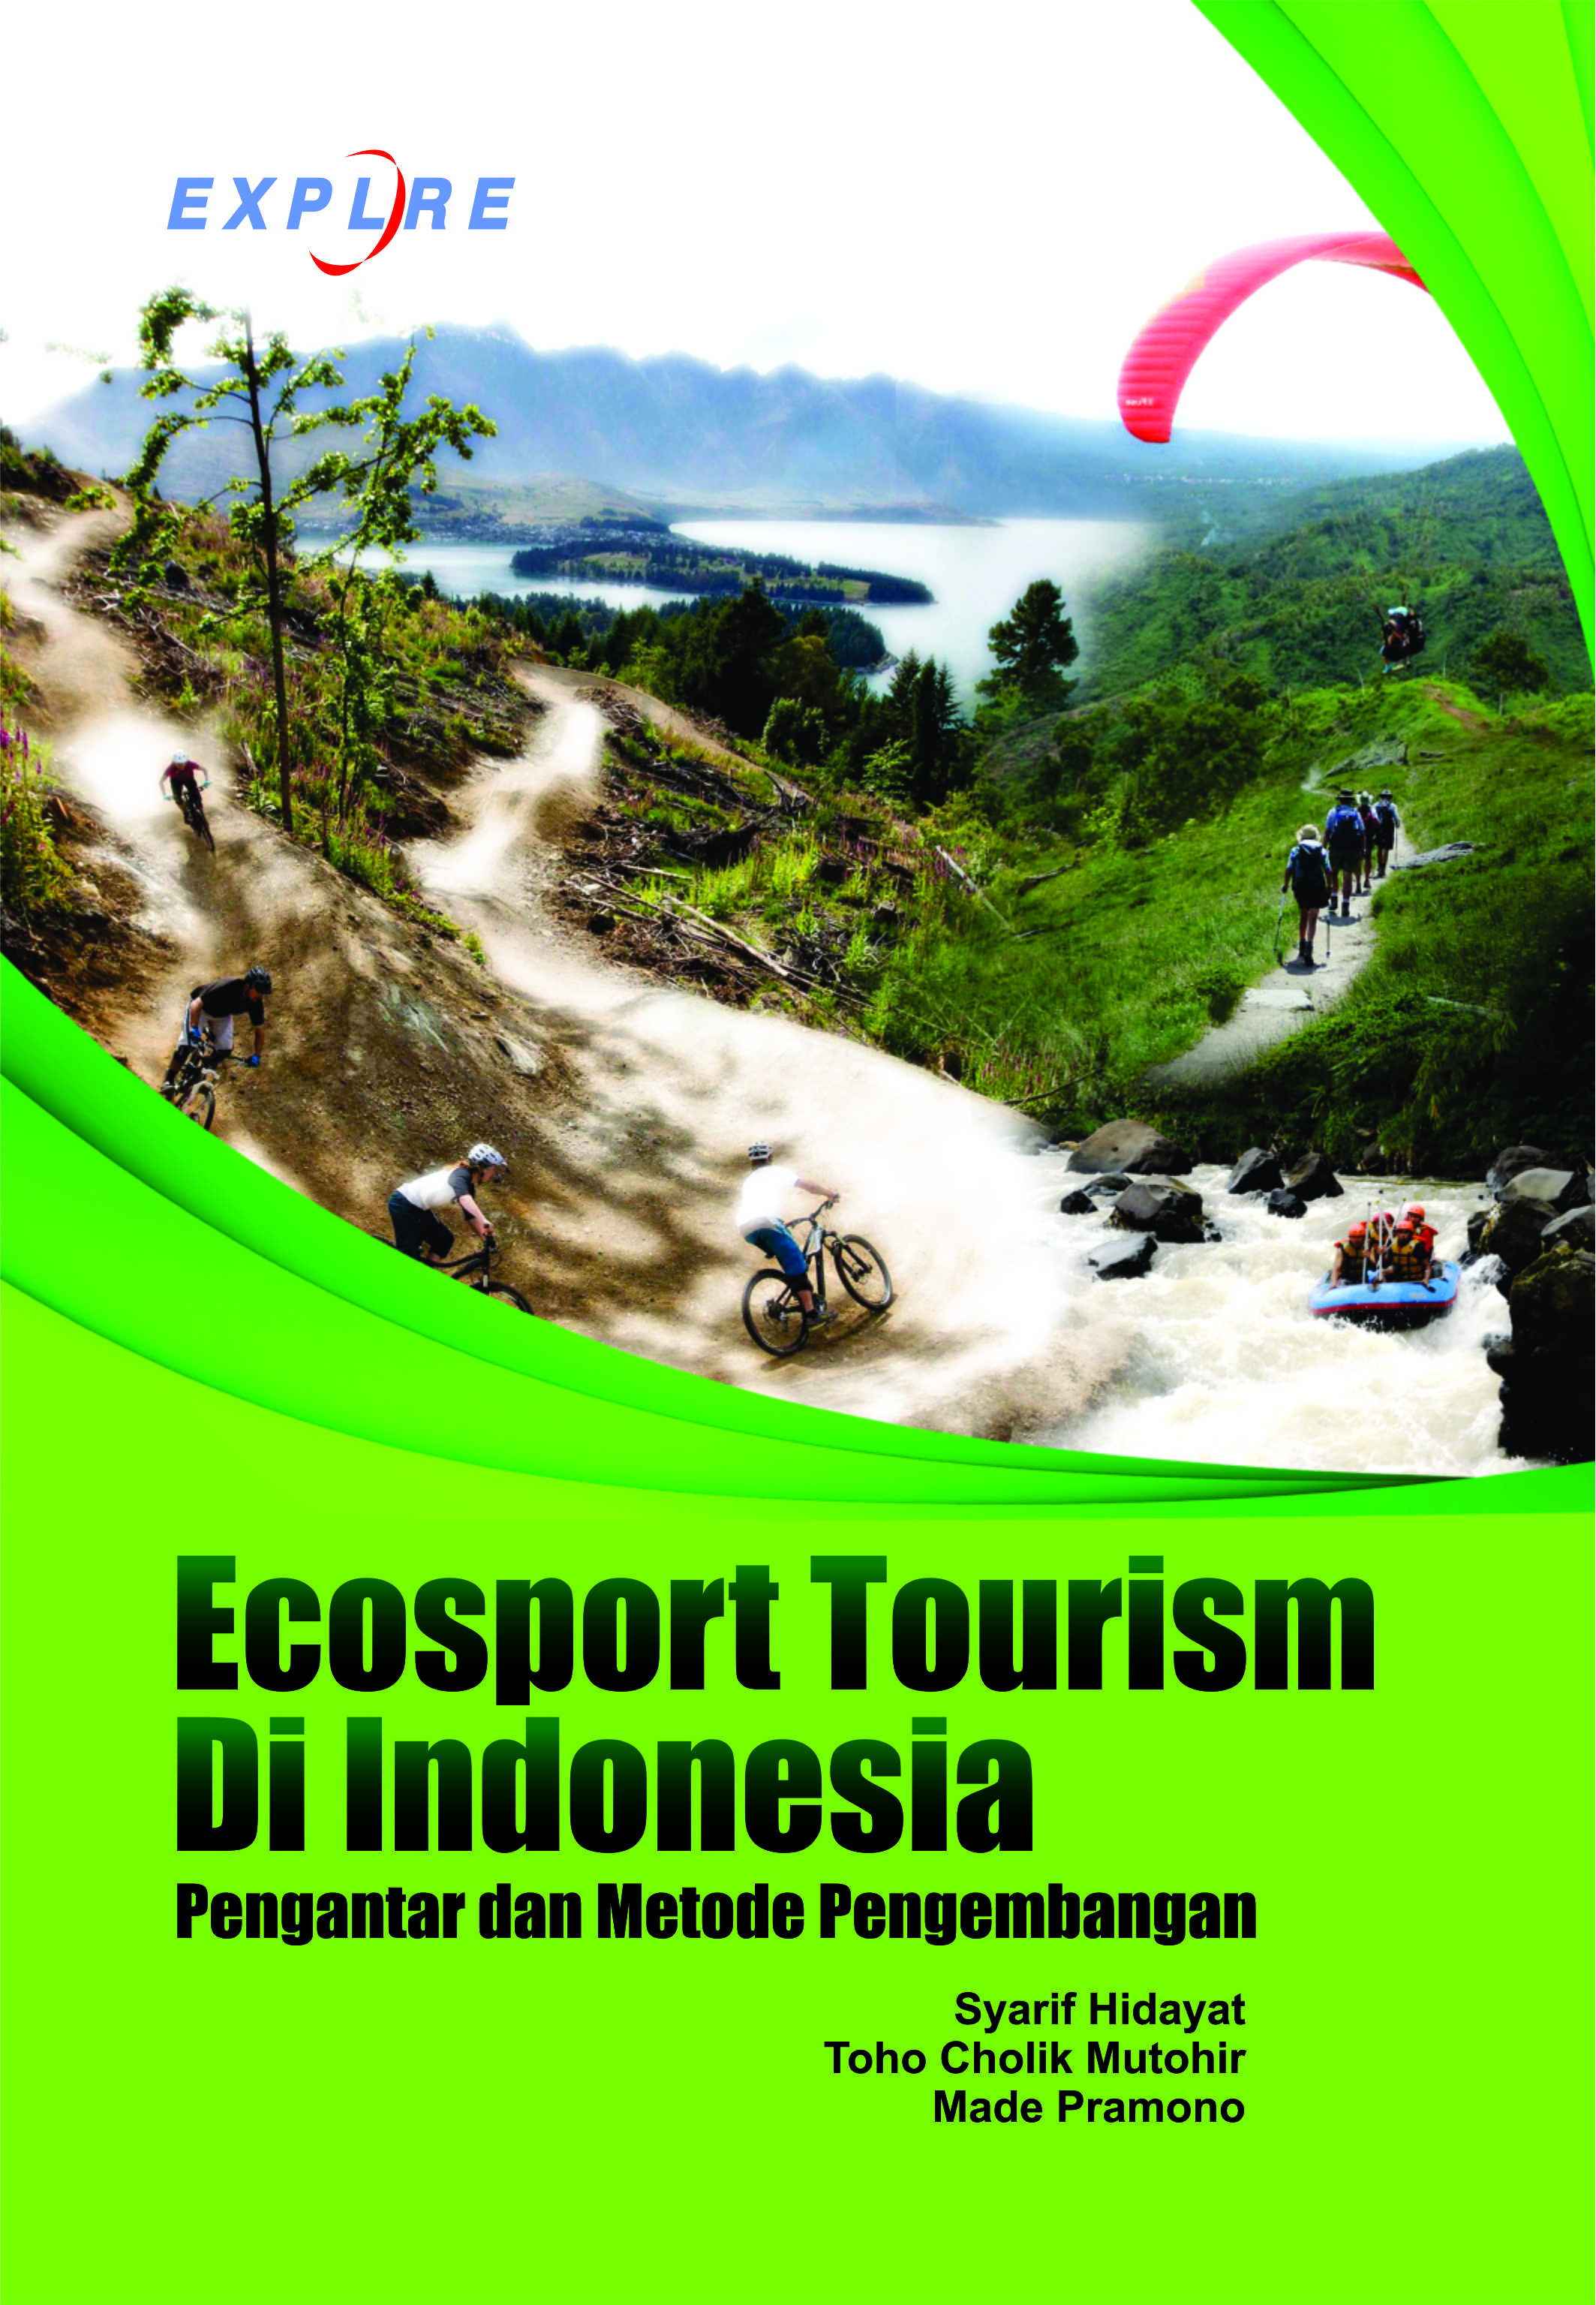 Pengantar dan metode pengembangan ecosport tourism di Indonesia [sumber elektronis]